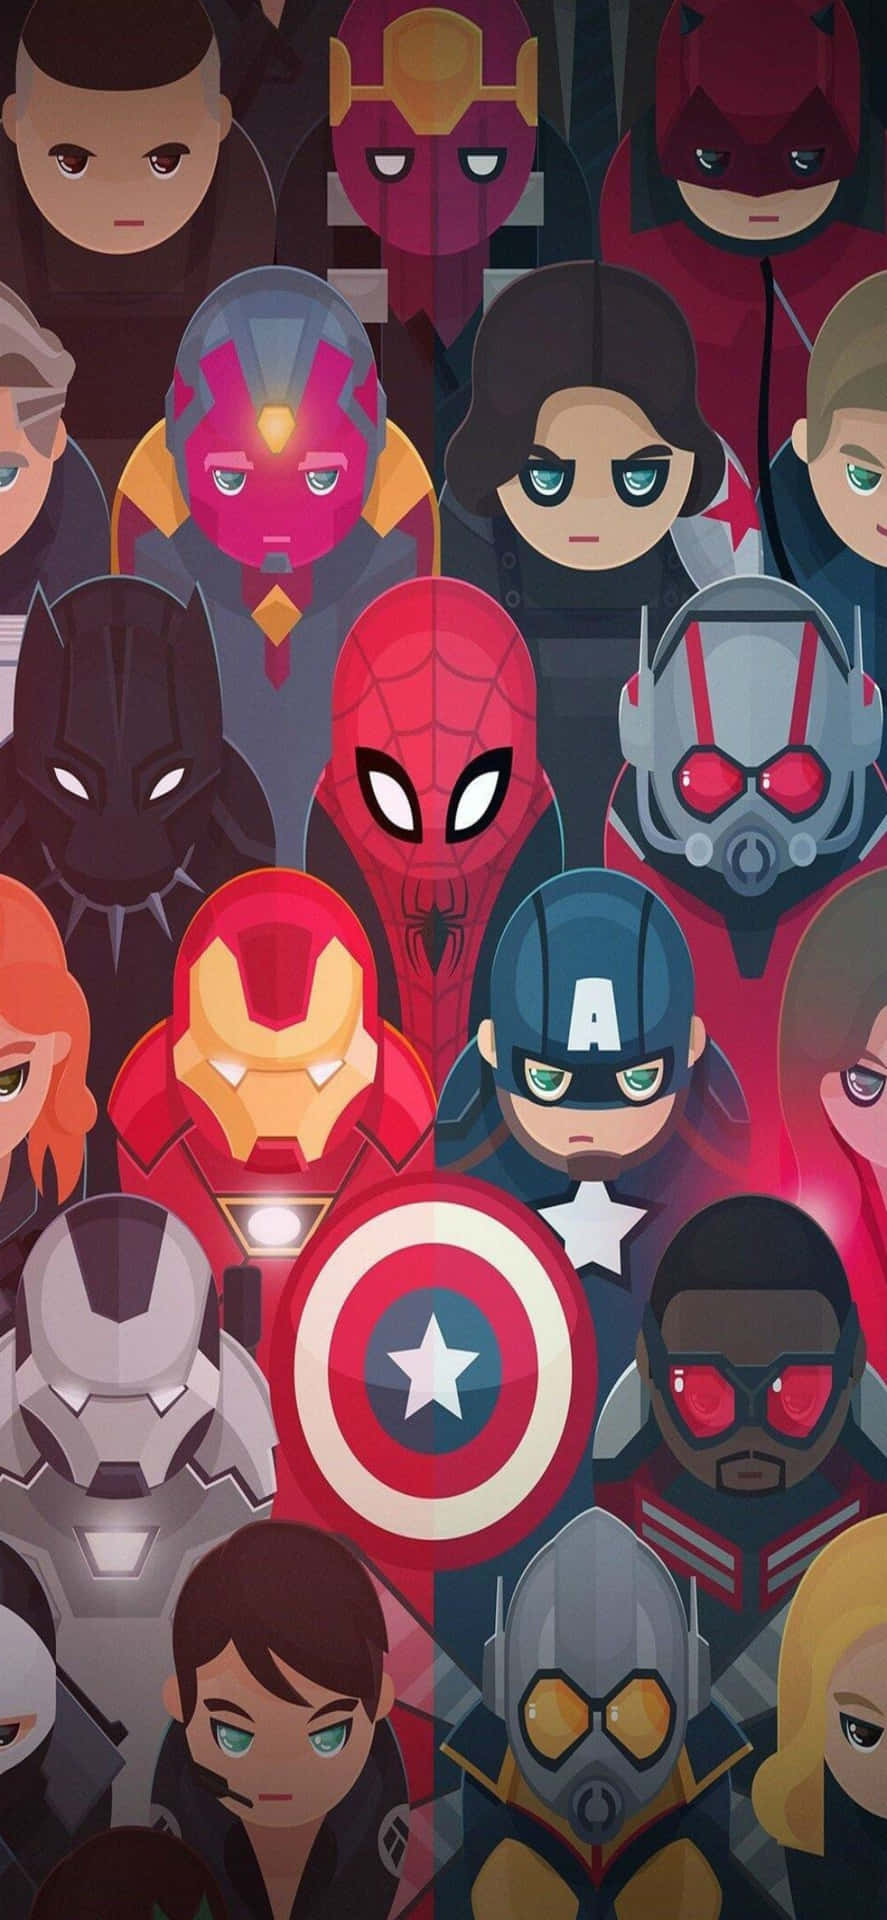 Verbesseredein Iphone Mit Dem Team, Das Alles Begonnen Hat - Marvel's Avengers